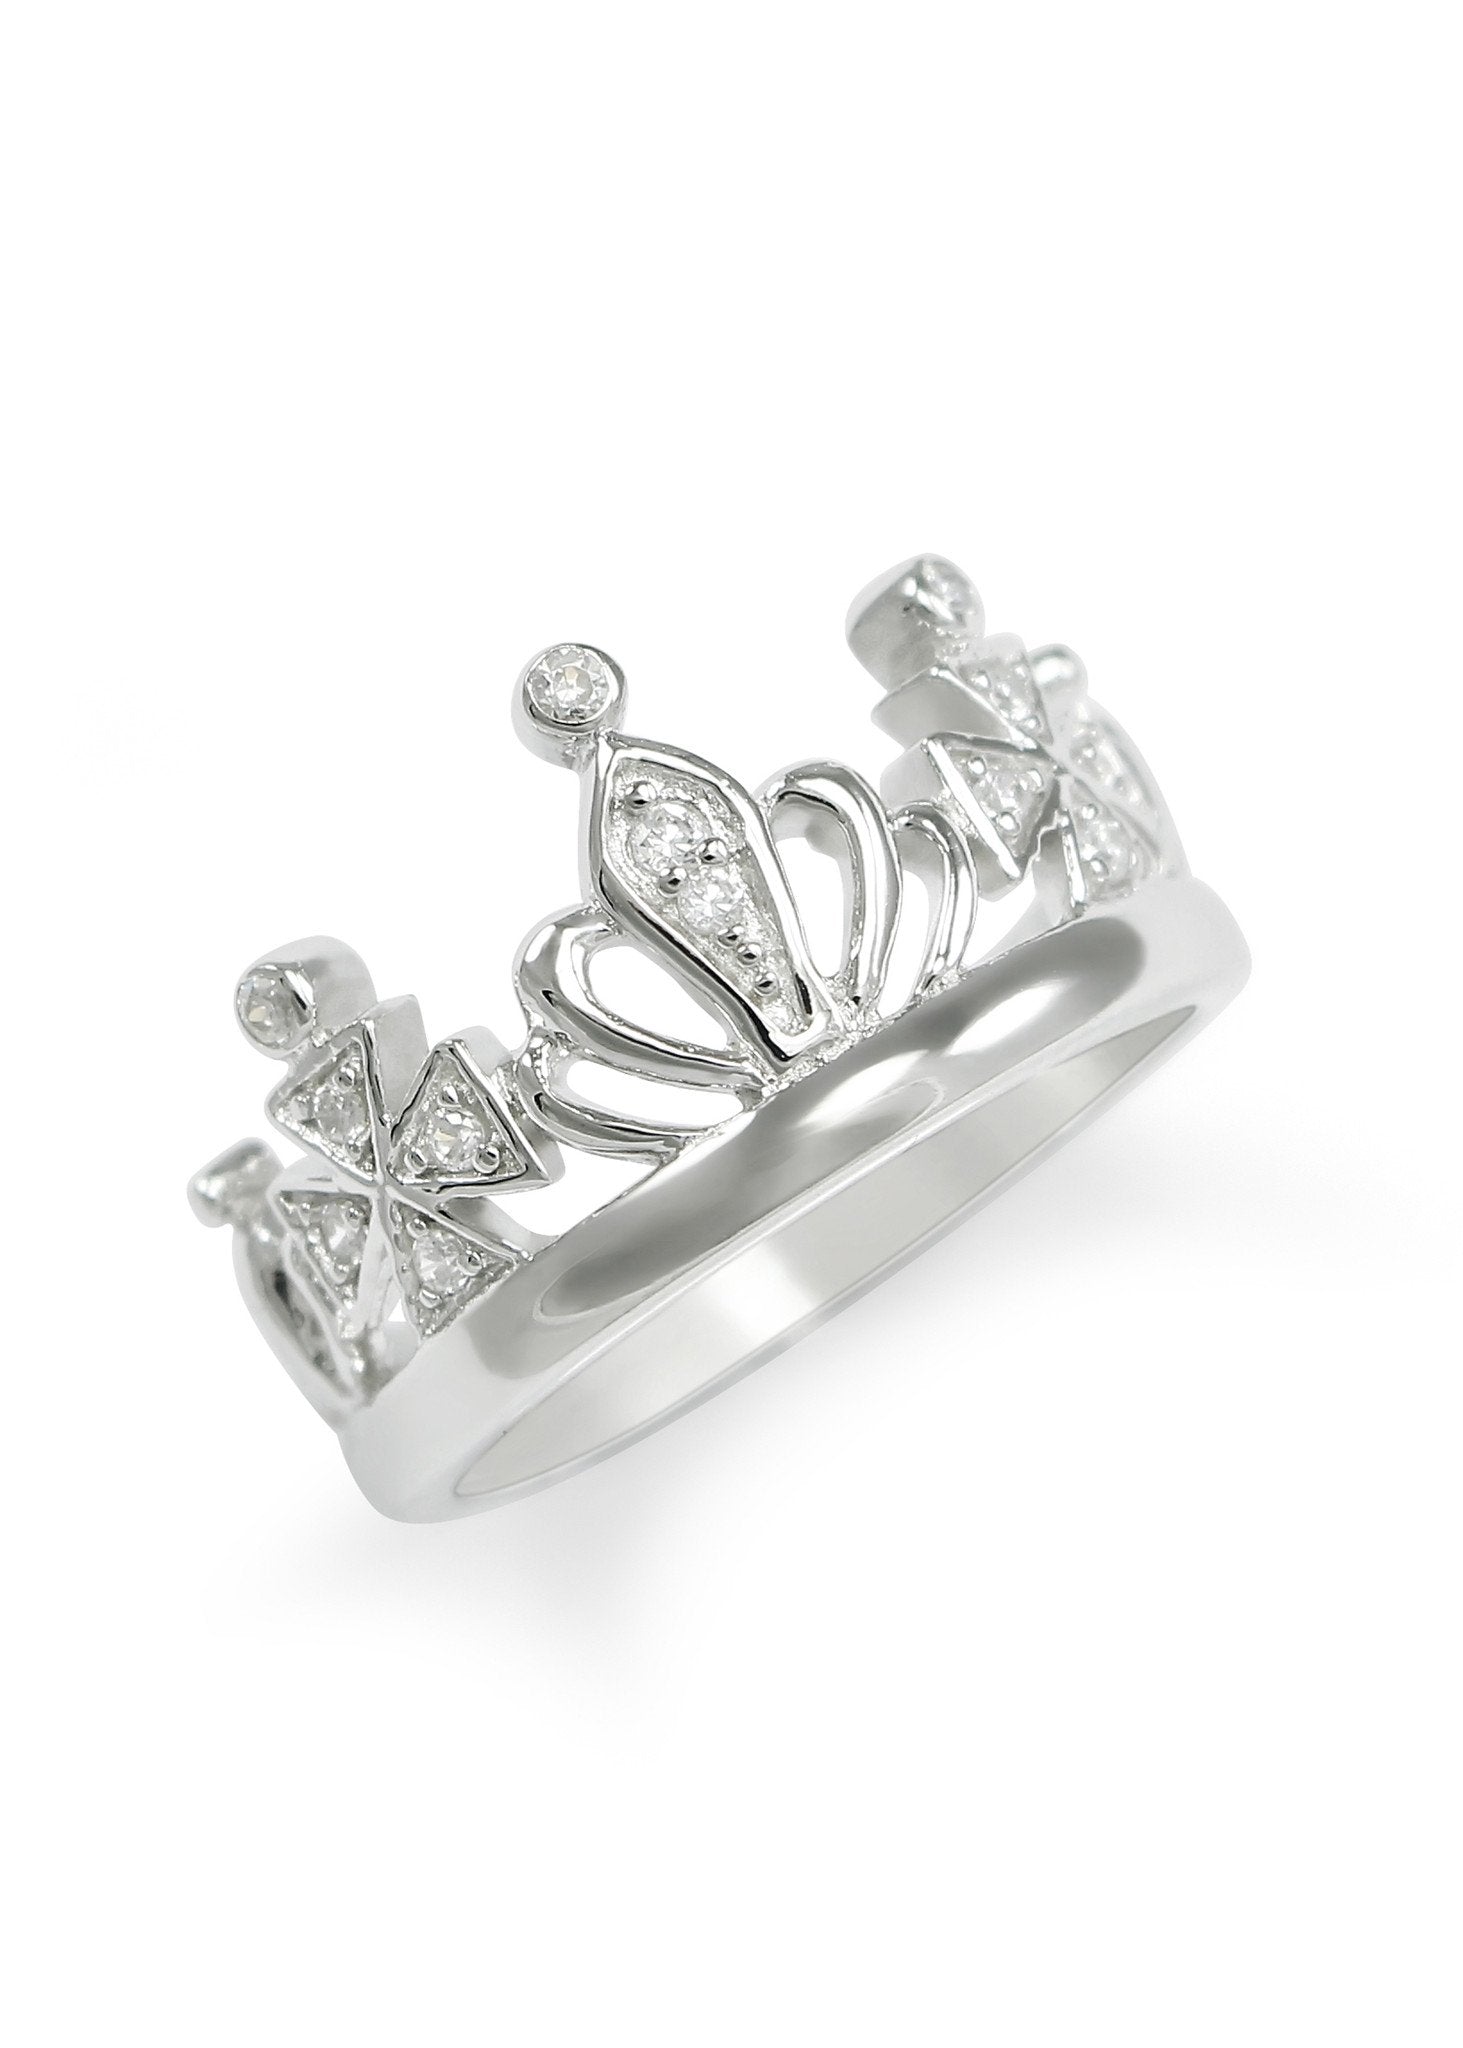 New Simple Atmospheric Hot Sale 925 Sterling Silver Crown Ring - Crown Rings